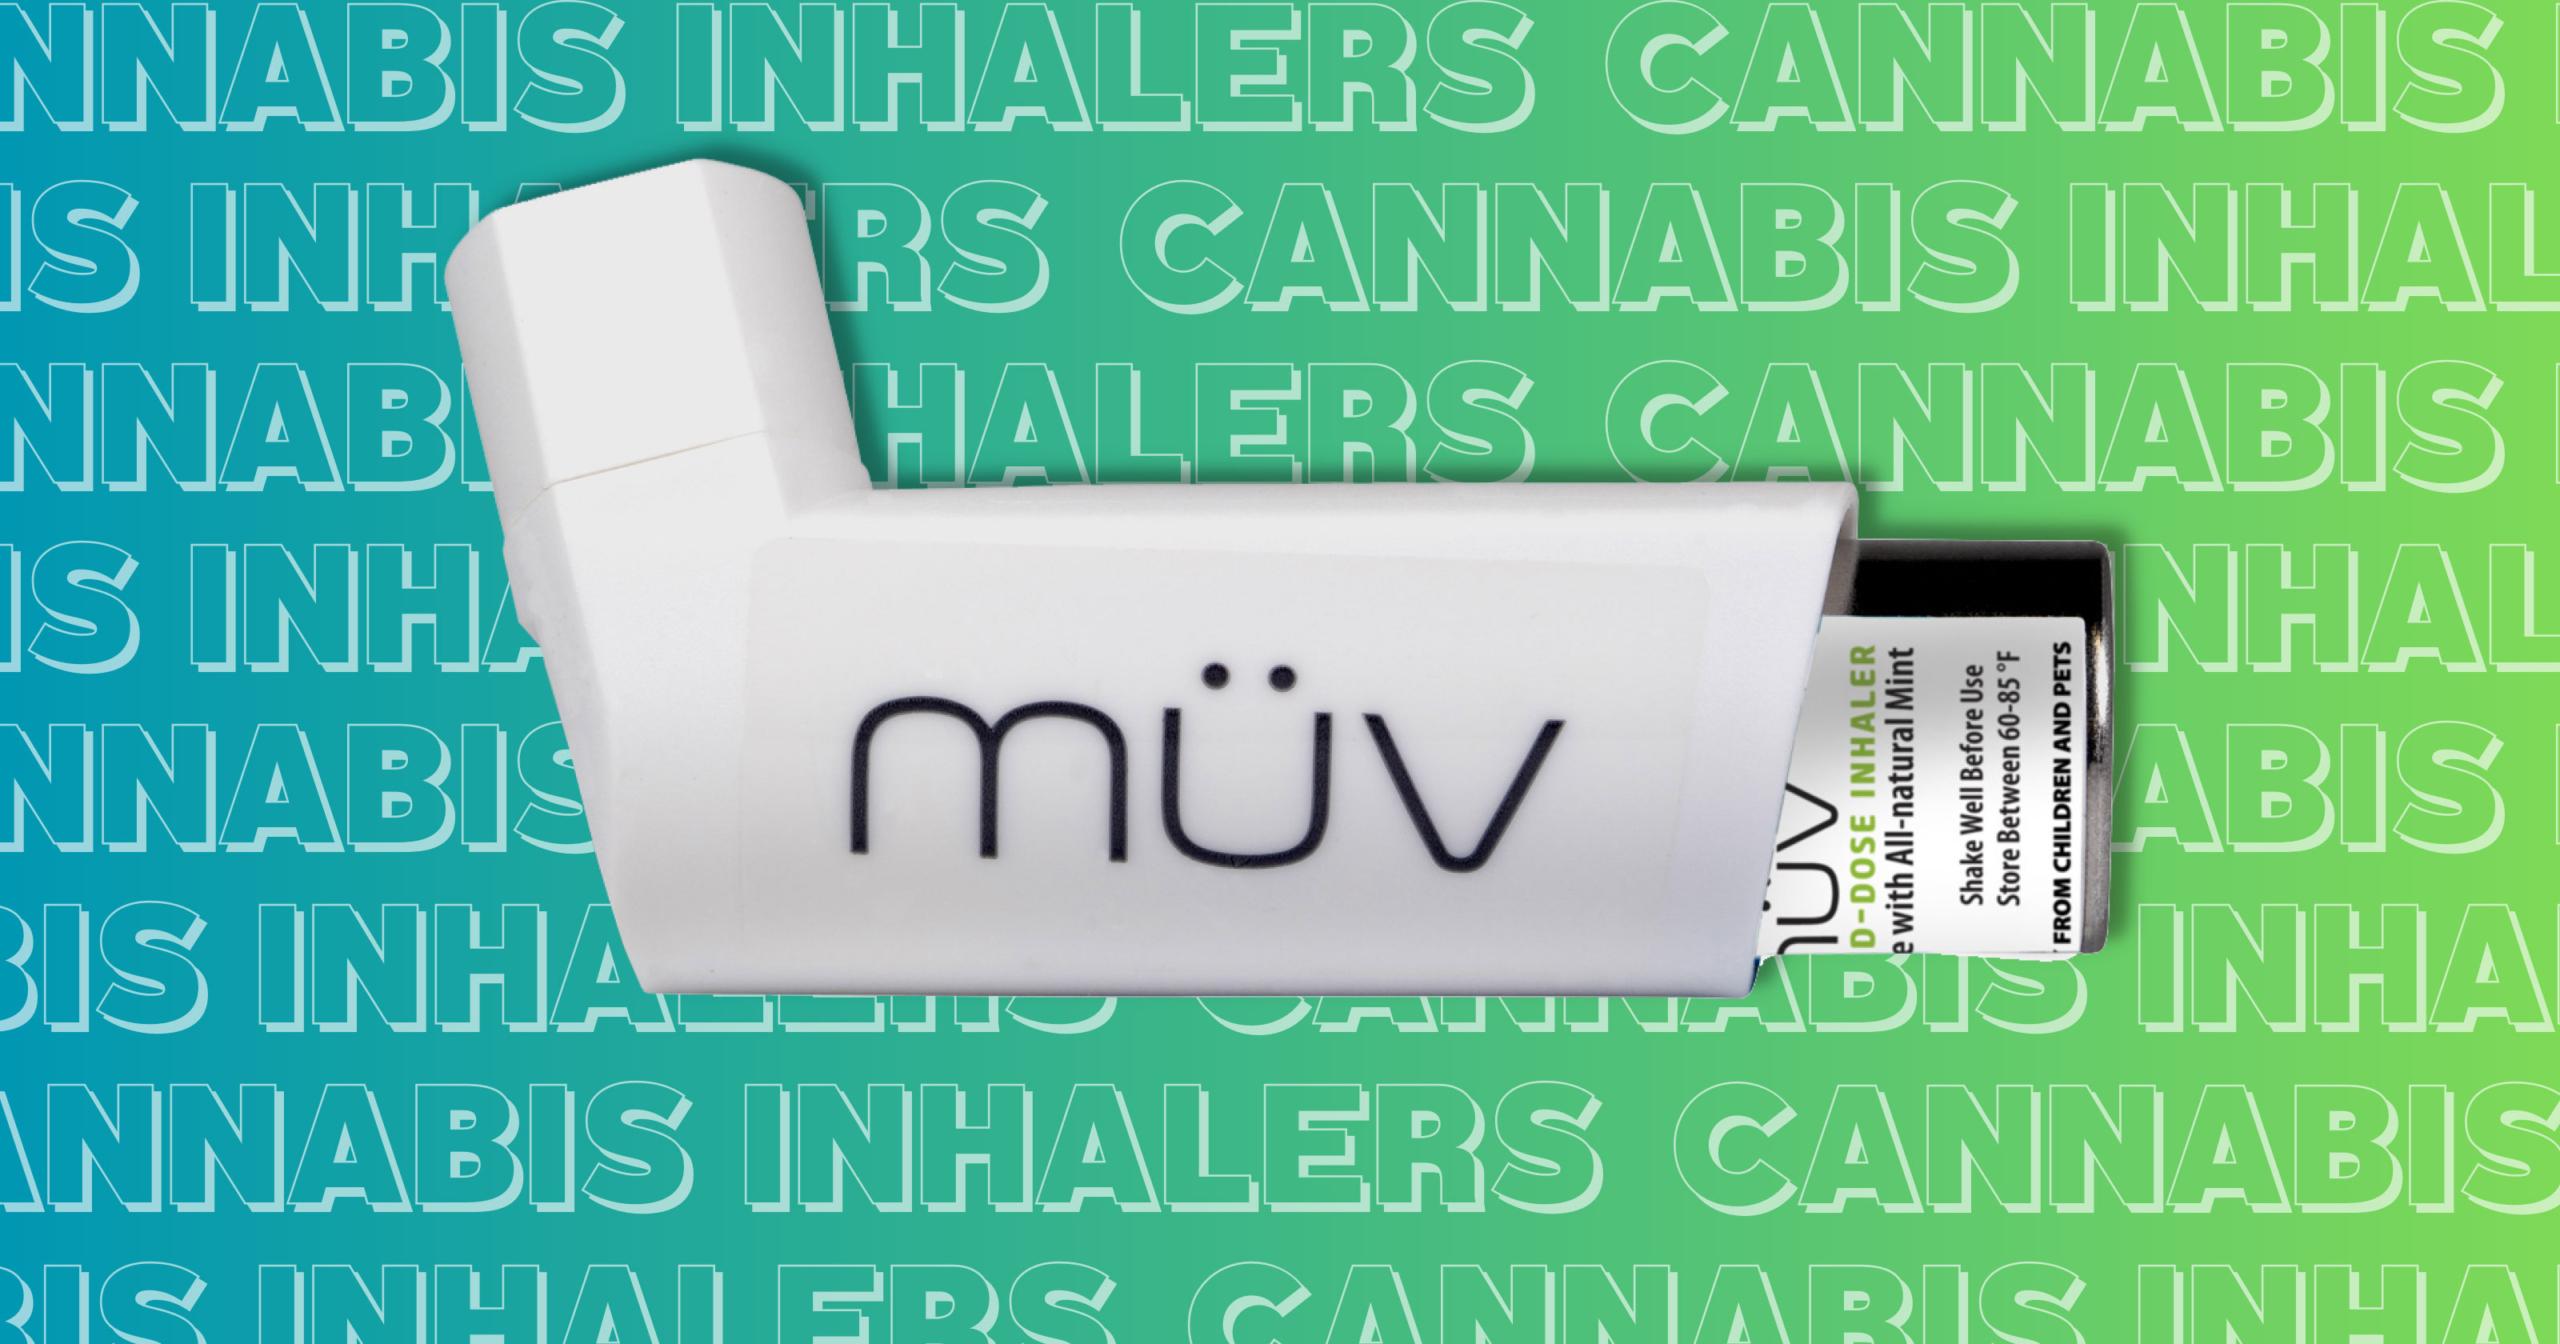 Cannabis Inhalers